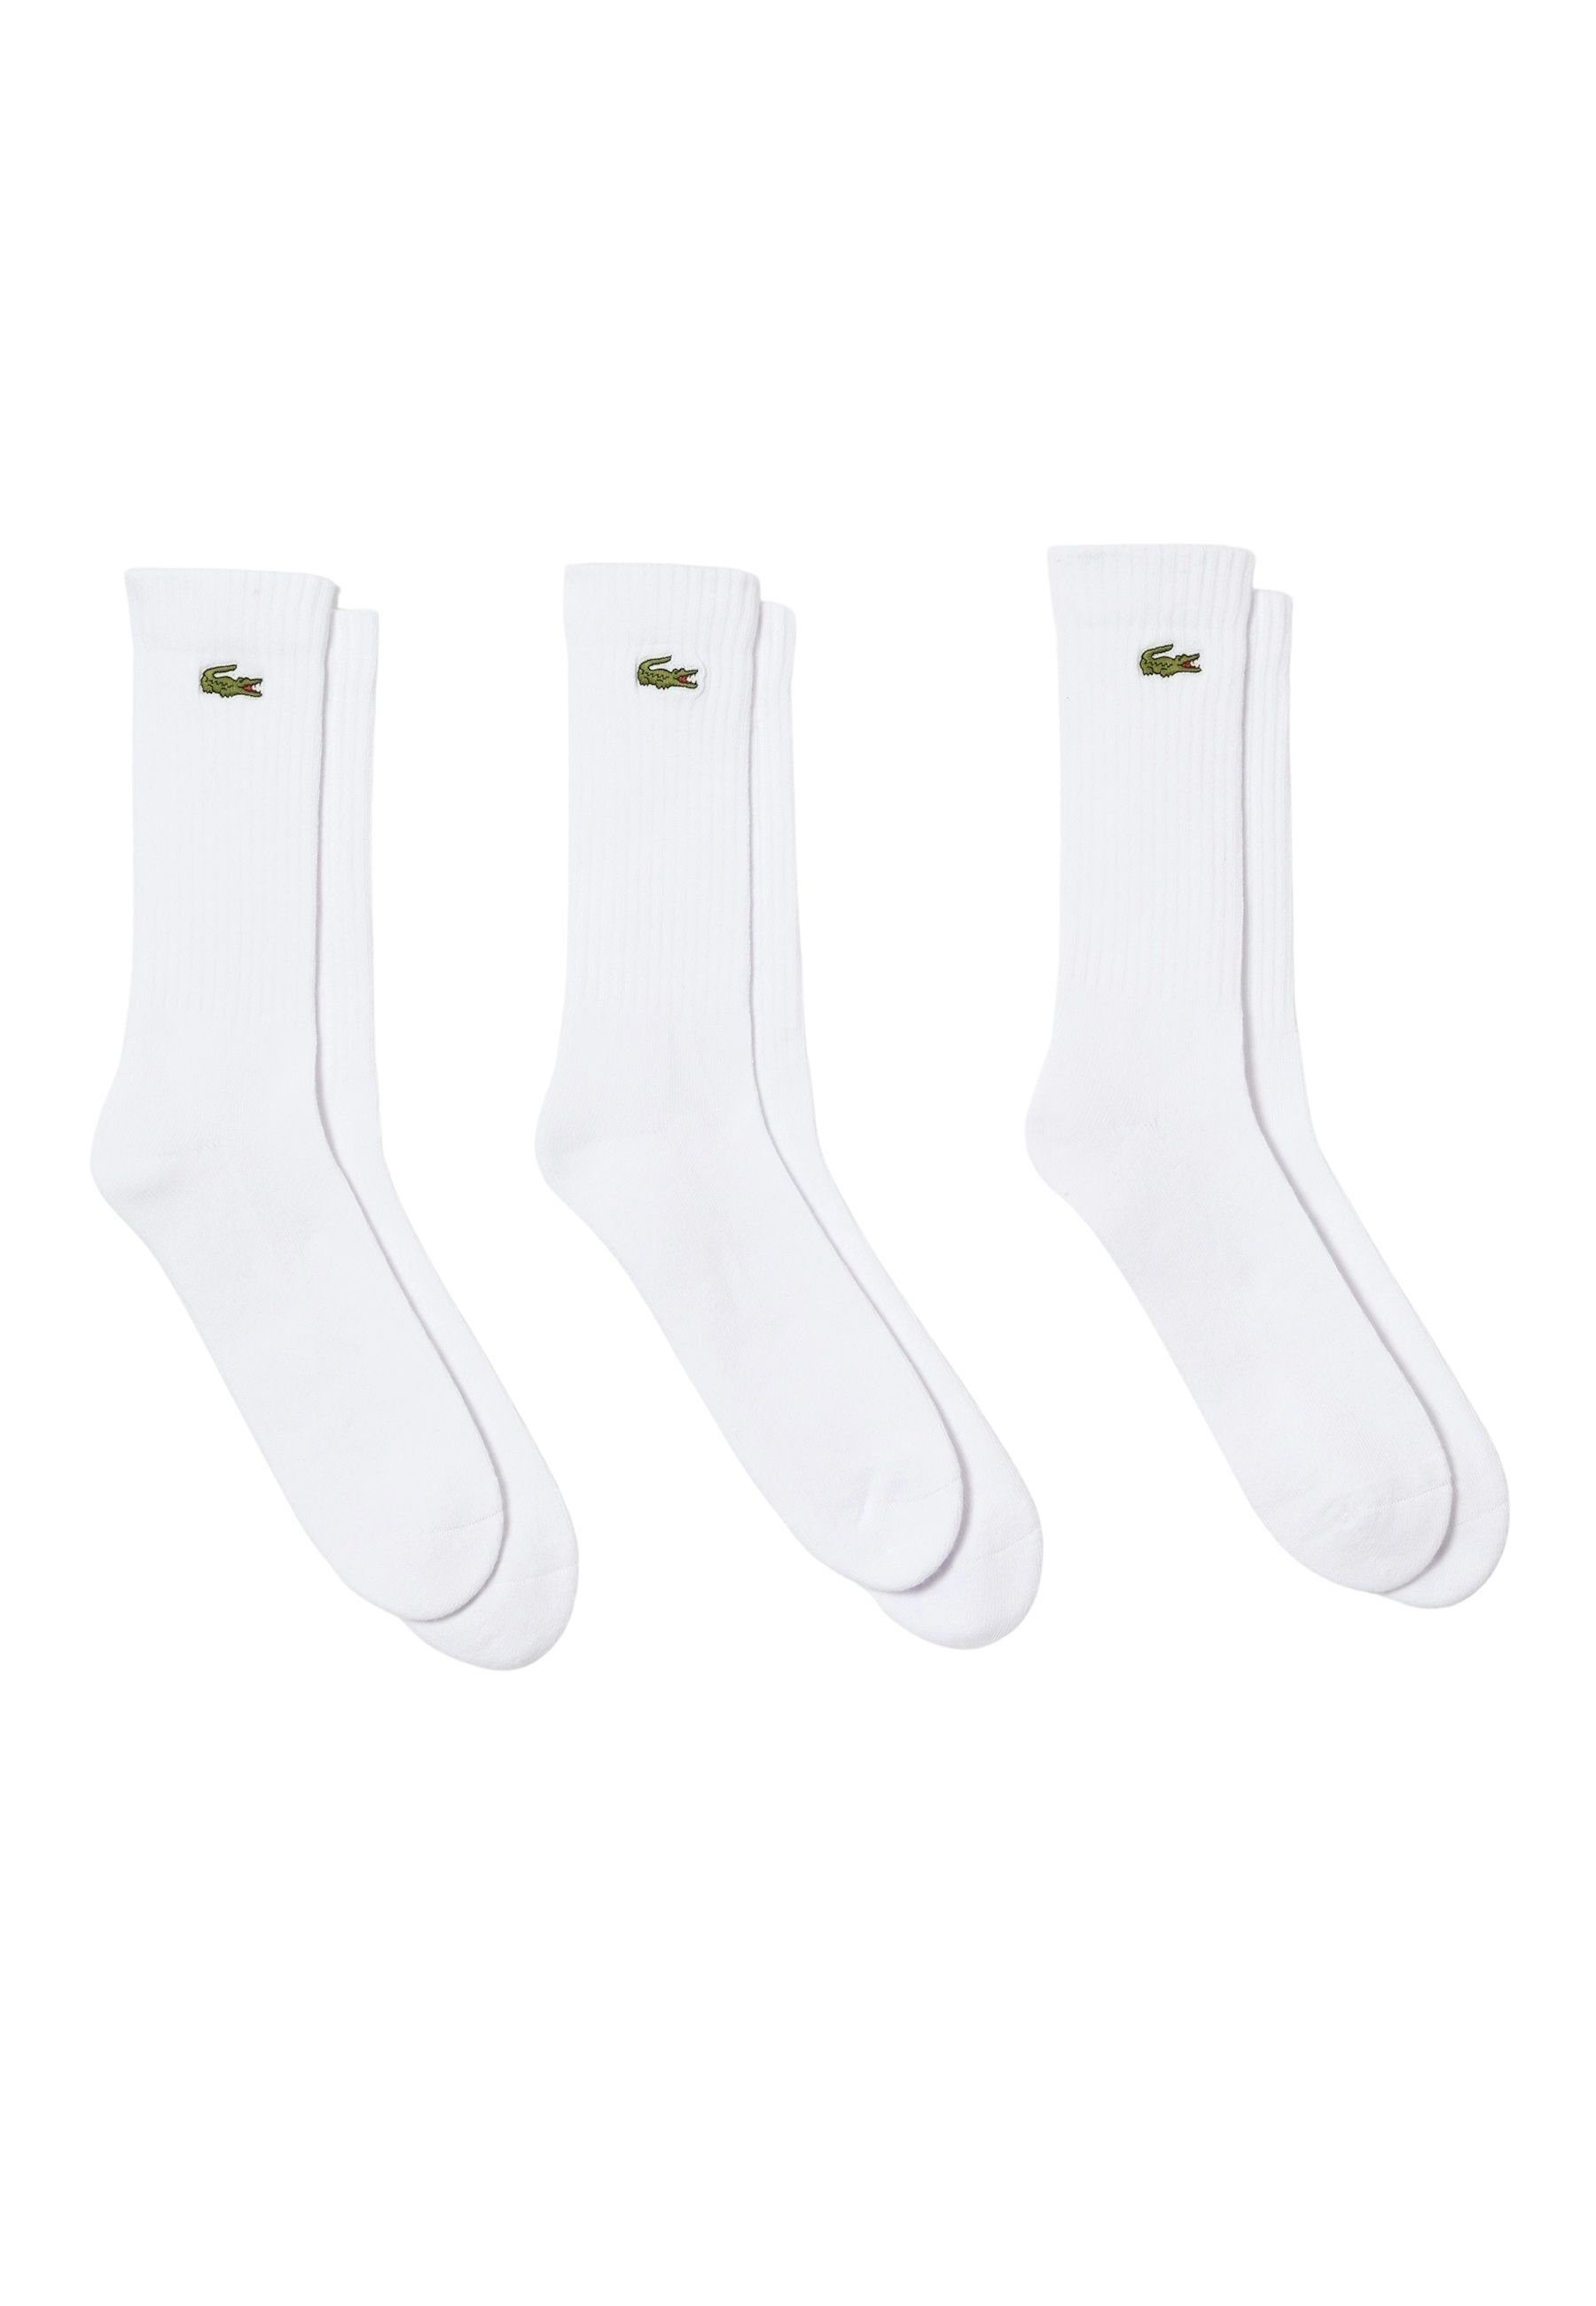 Lacoste Socken Socken Permanent Offer hohe Socken Dreierpack (3-Paar) weiß | Socken